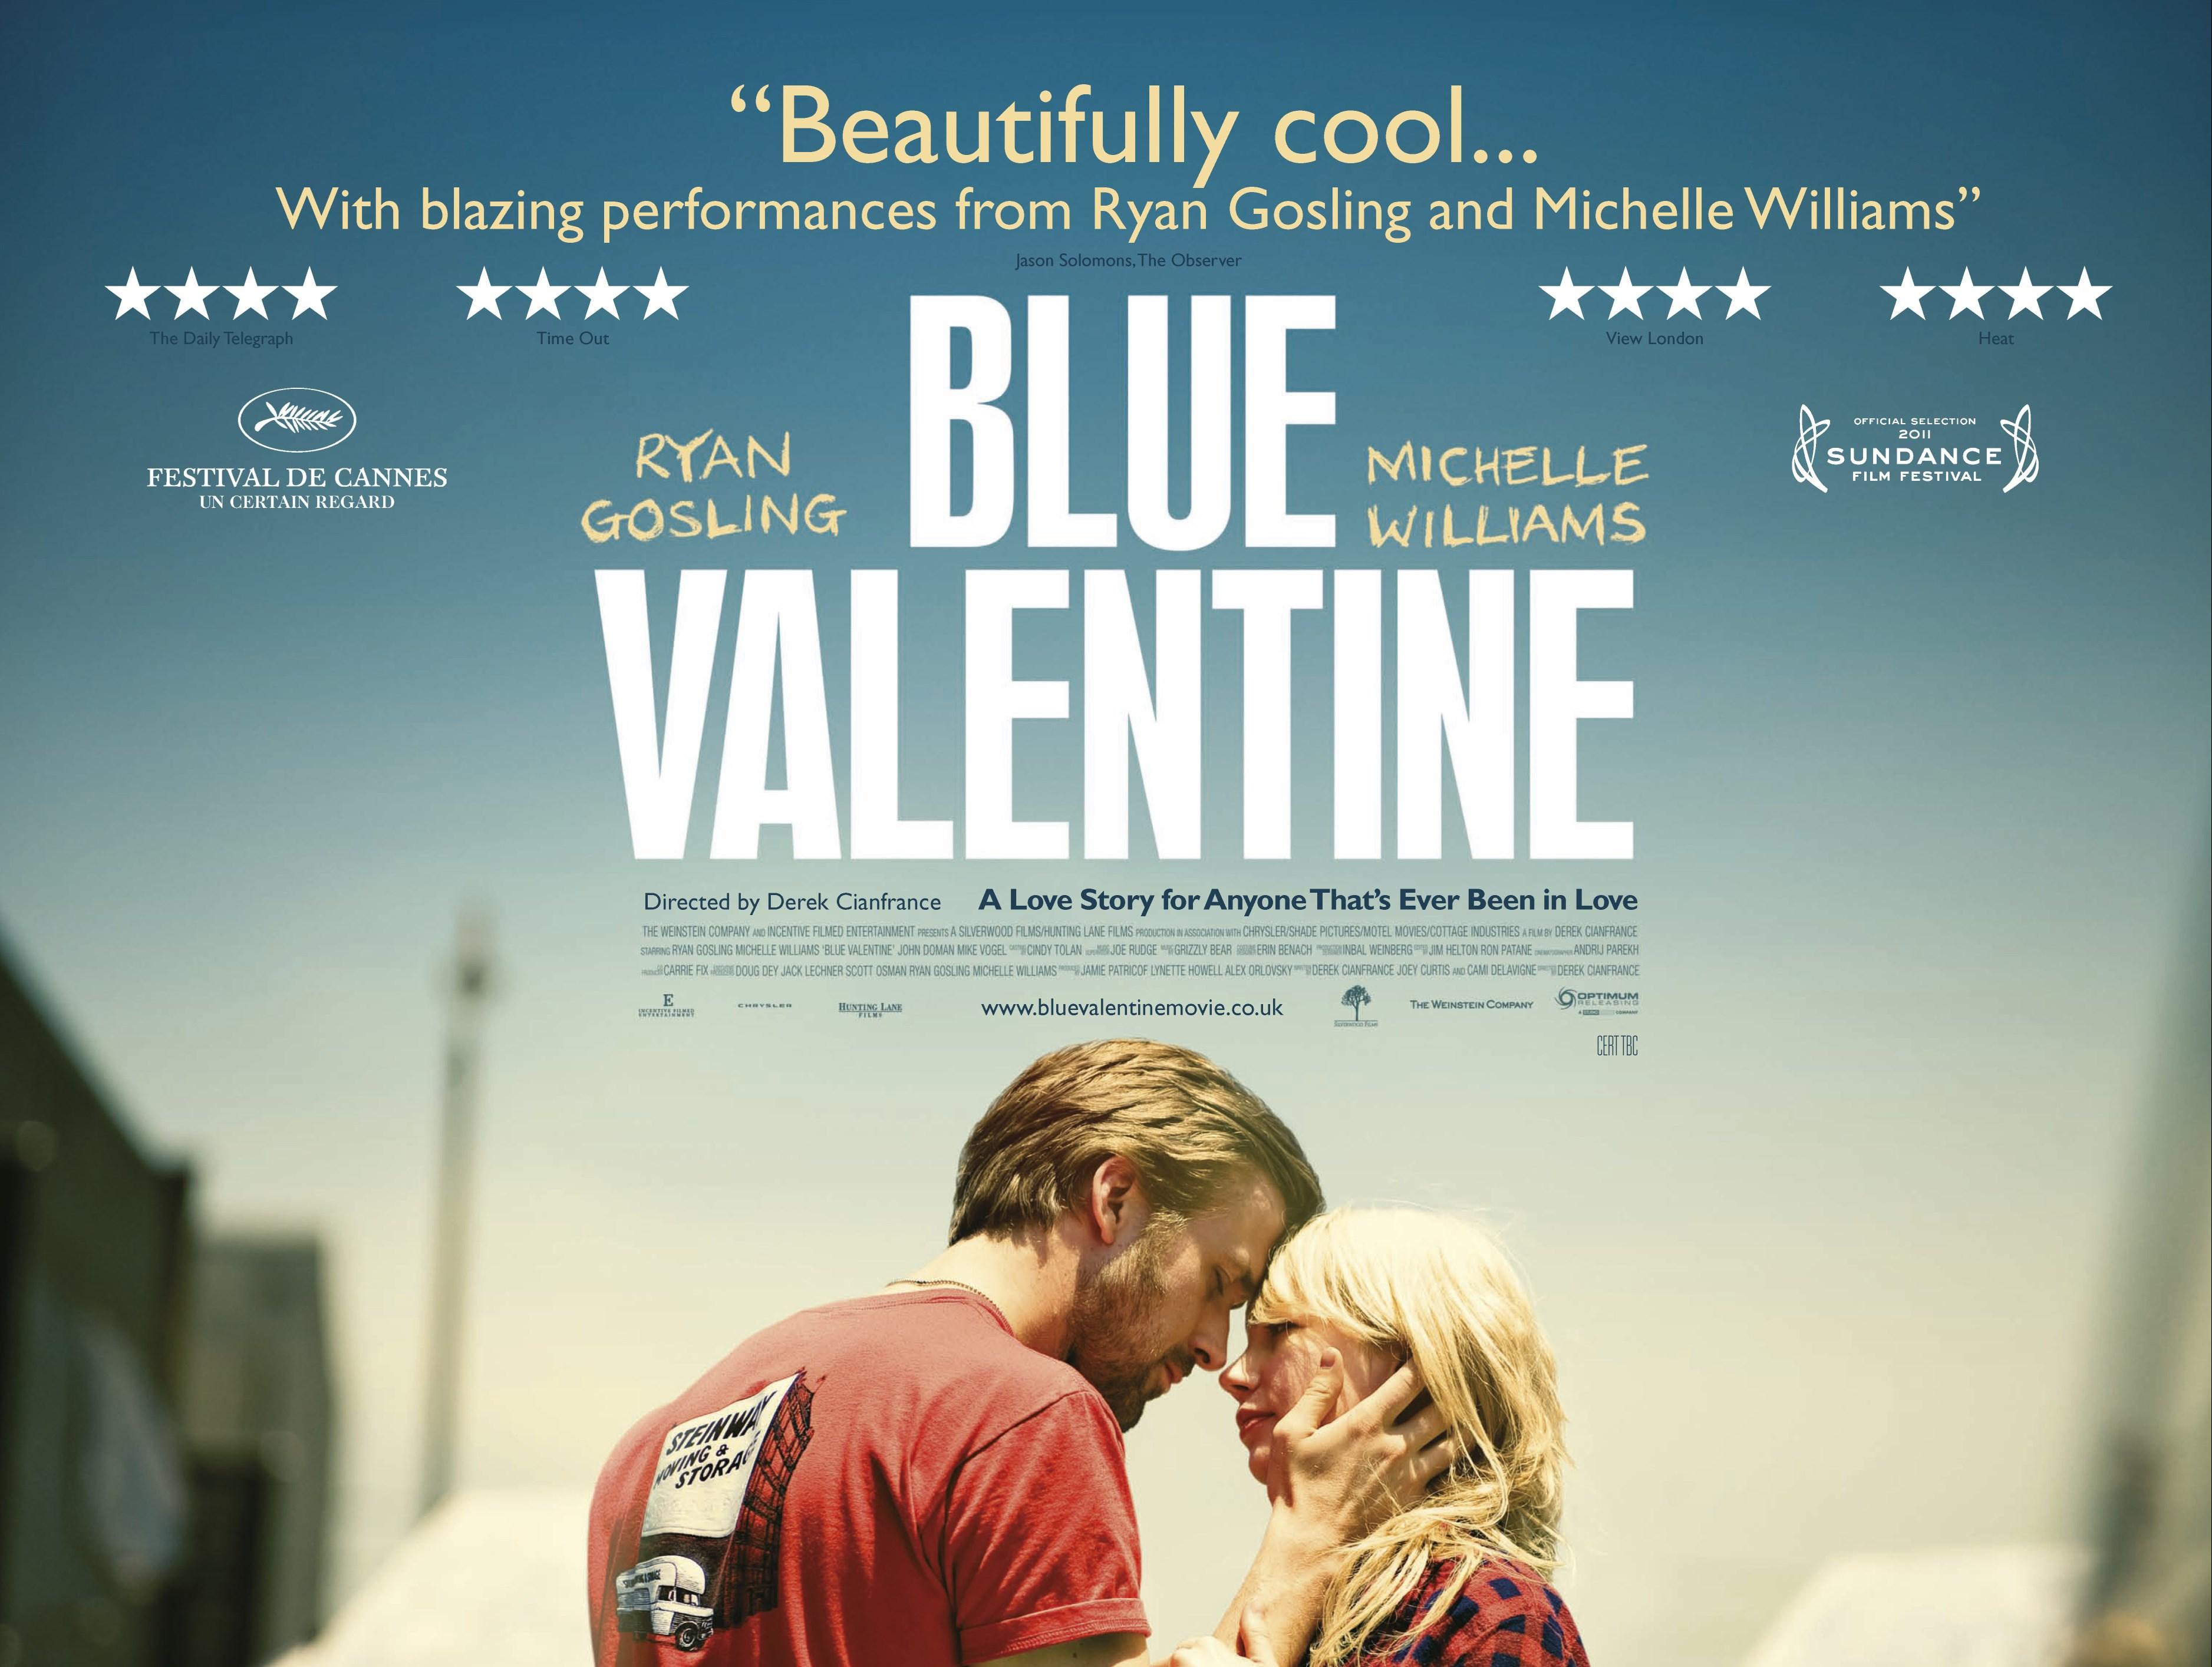 16 Blue valentine 2010 full movie free download